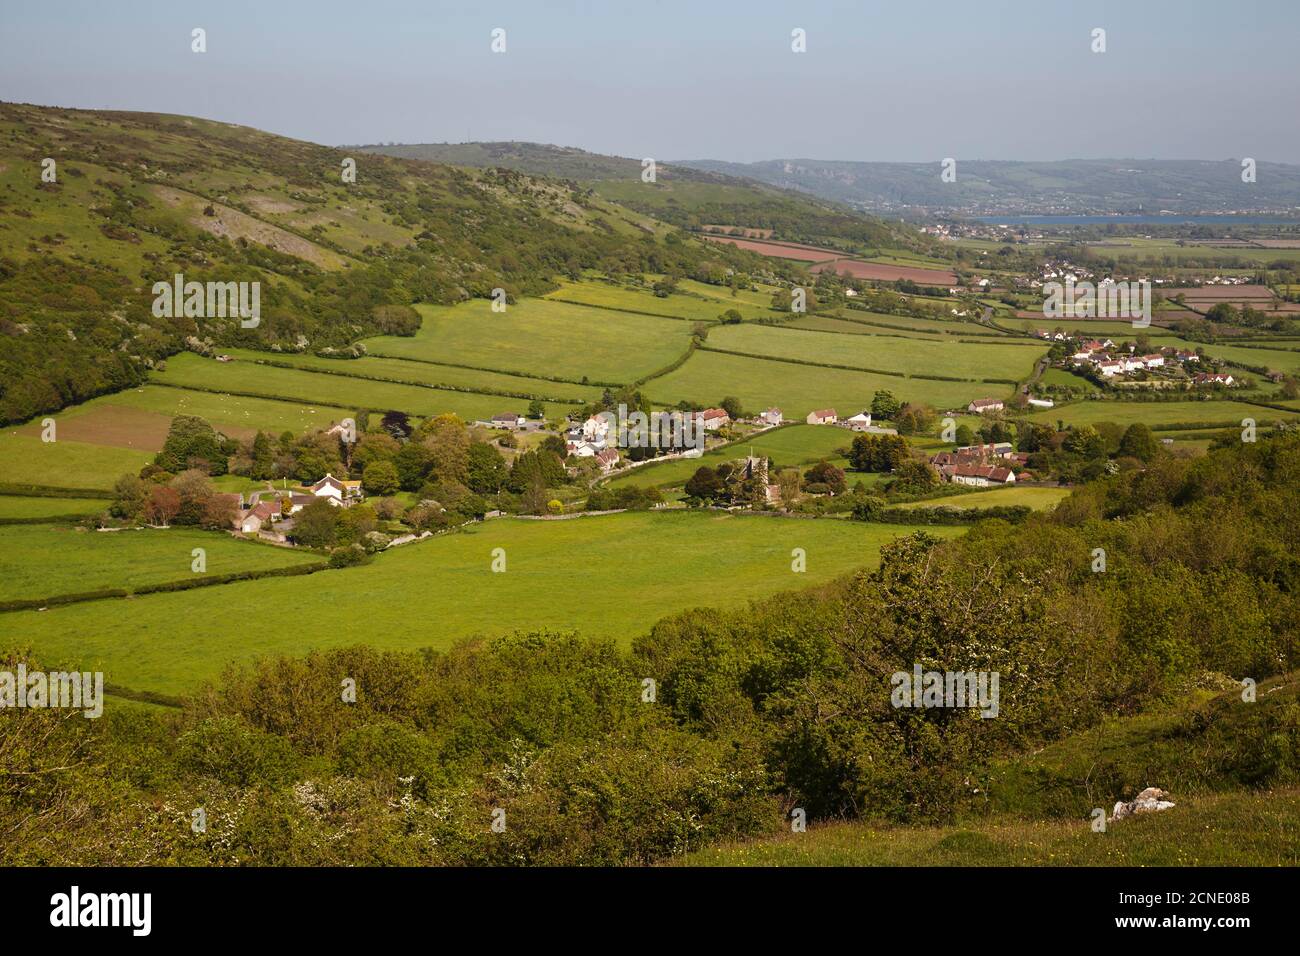 Ein Blick über die Grafschaft vom Crook Peak entlang der südlichen Hänge der Mendip Hills, in der Nähe von Cheddar, Somerset, England, Großbritannien, Europa Stockfoto